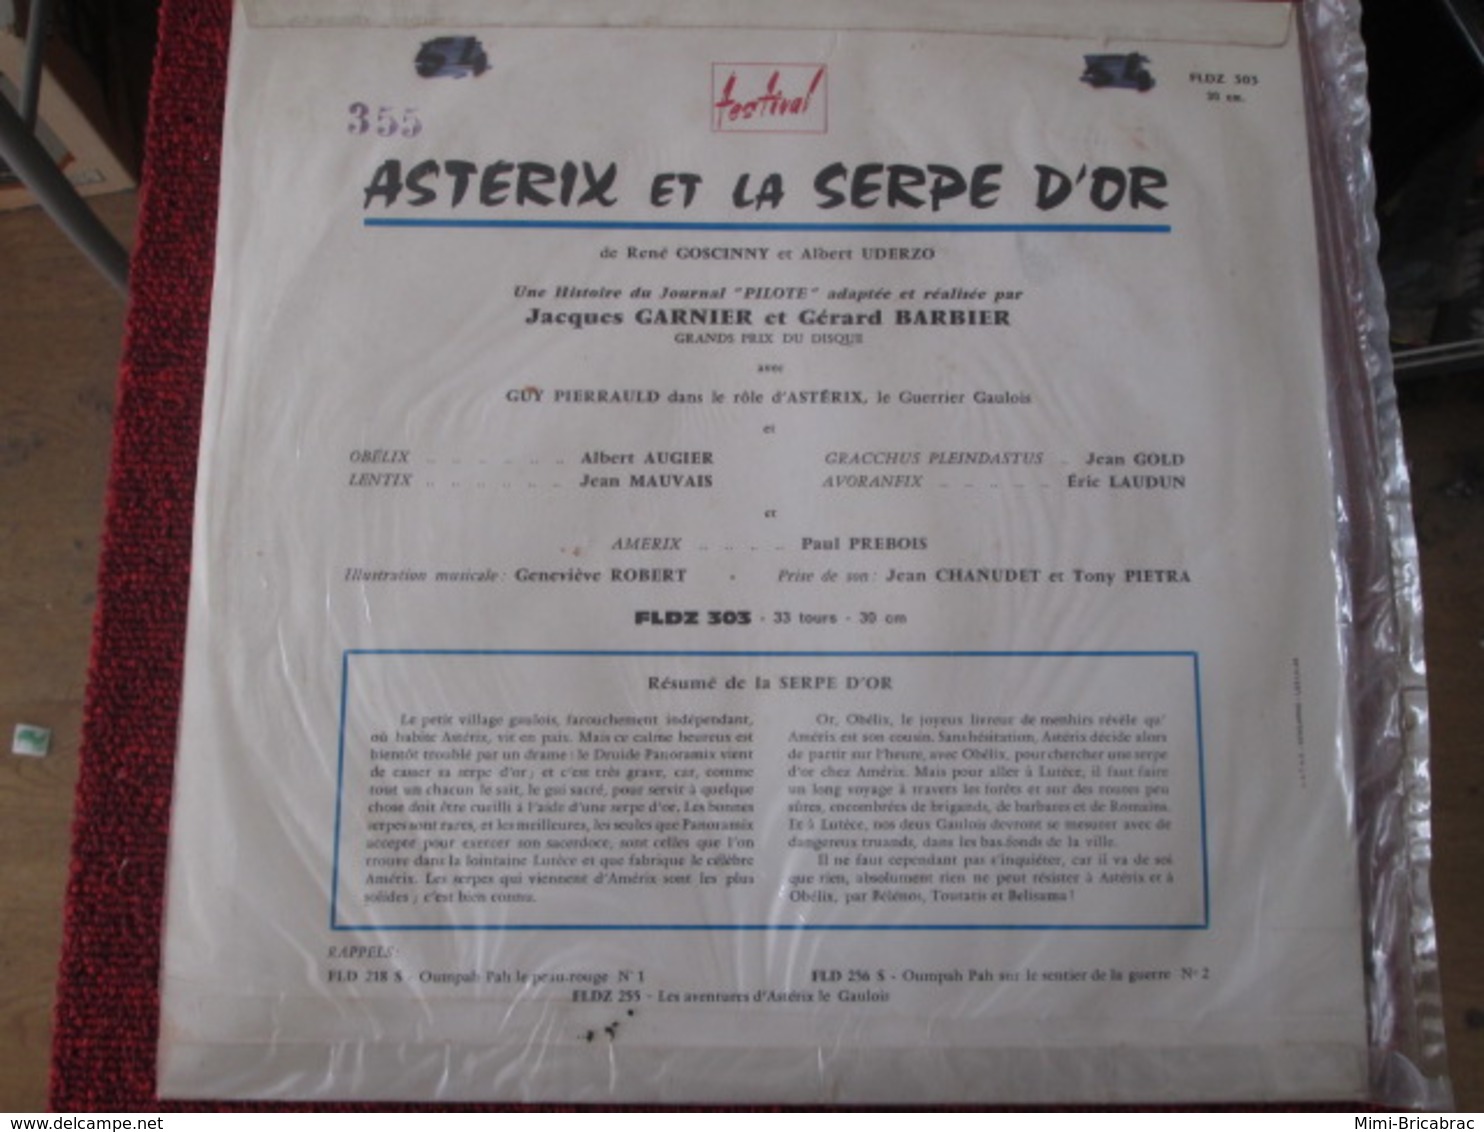 BACPLASTCAV Disque BANDES DESSINEE ANNEES 60 ASTERIX ET LA SERPE D'OR 33T 30cm - Platen & CD